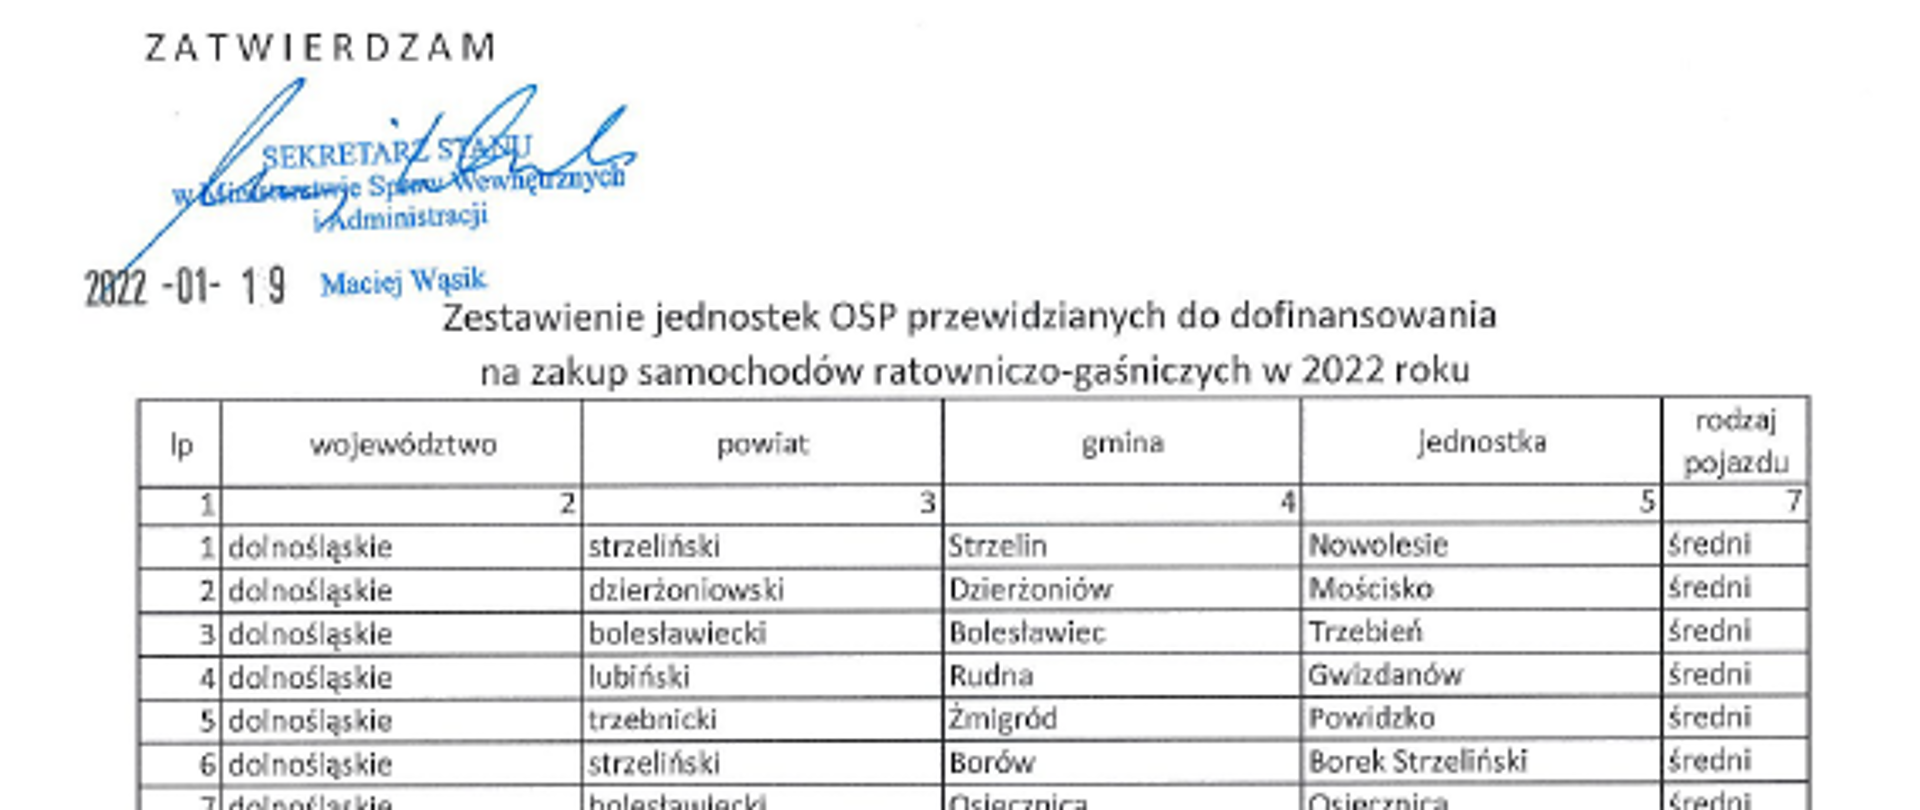 Wiceminister Maciej Wąsik zatwierdził zestawienie jednostek OSP przewidzianych do dofinansowania na zakup samochodów ratowniczo–gaśniczych w 2022 r.